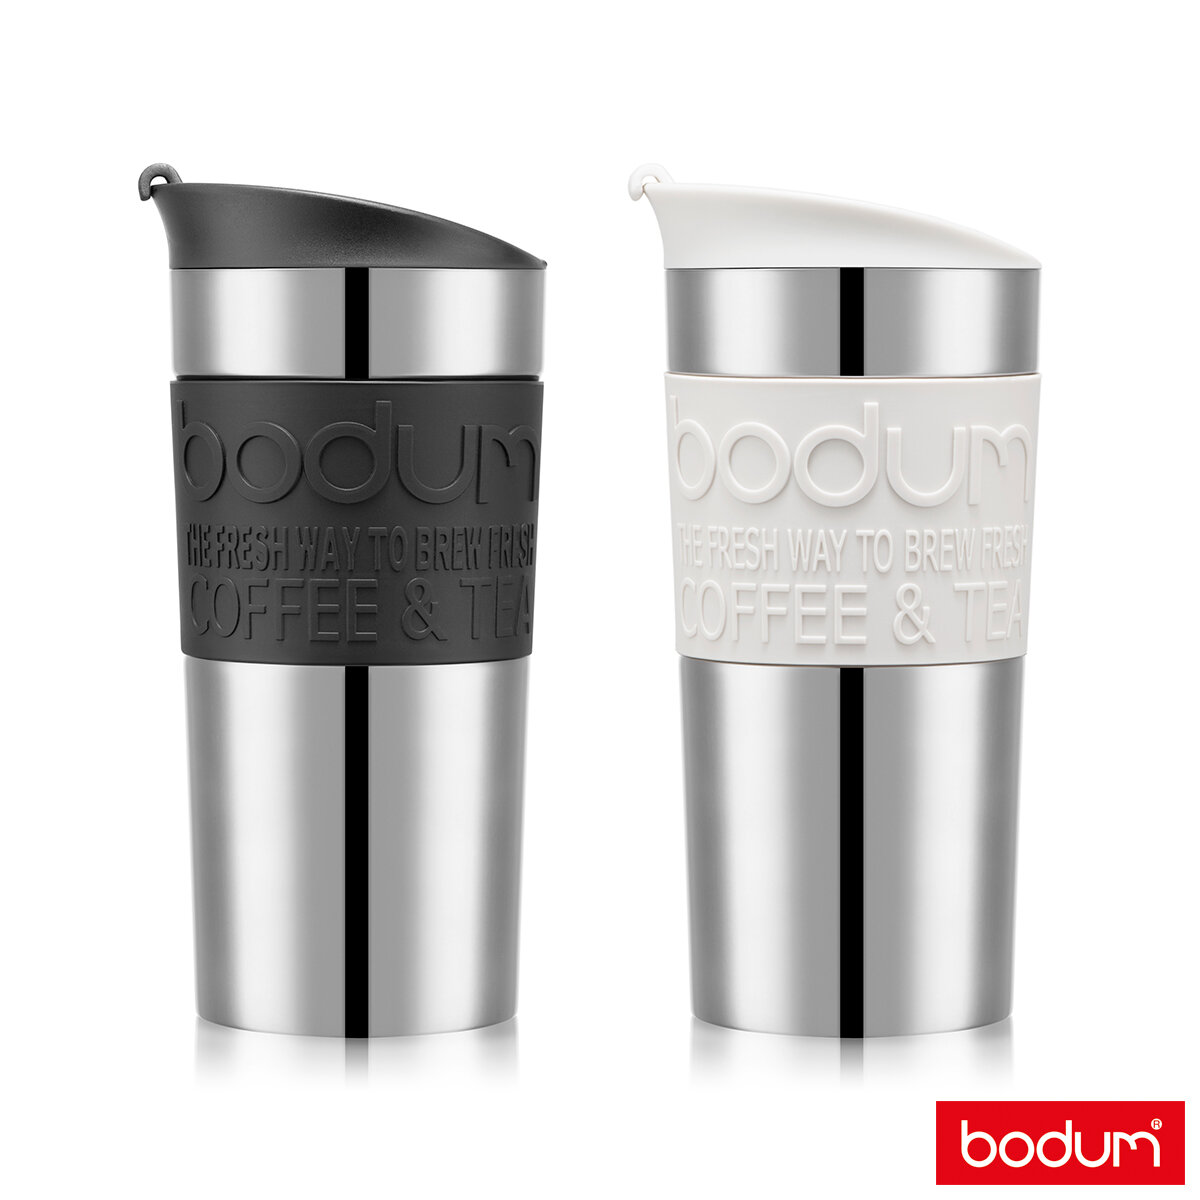 Bodum Stainless Steel Travel Mug (0.35L), 2 Pack - Black & White